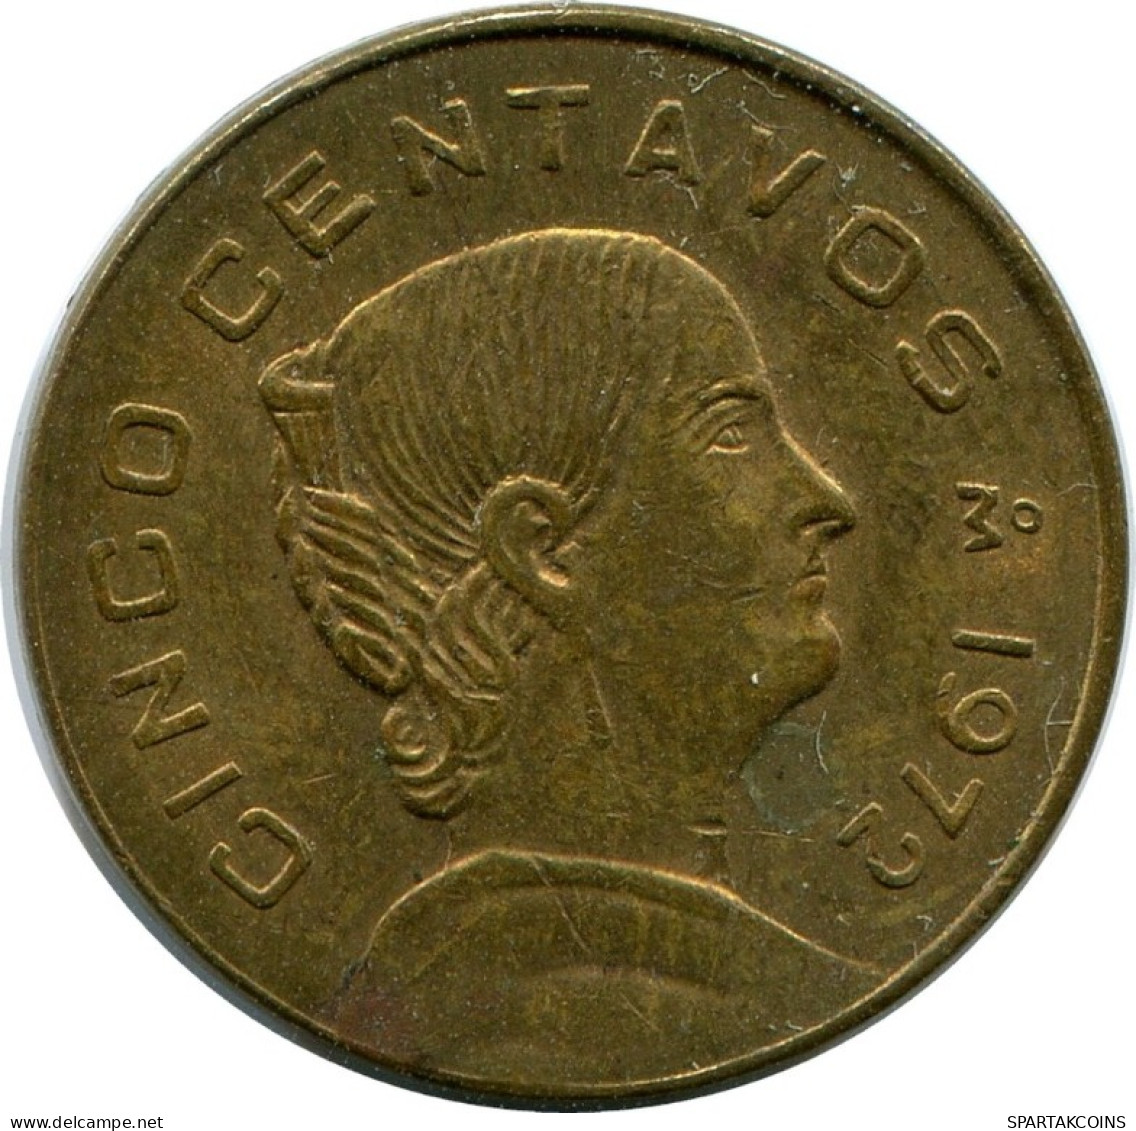 5 CENTAVOS 1972 MEXICO Coin #AH423.5.U.A - Mexico